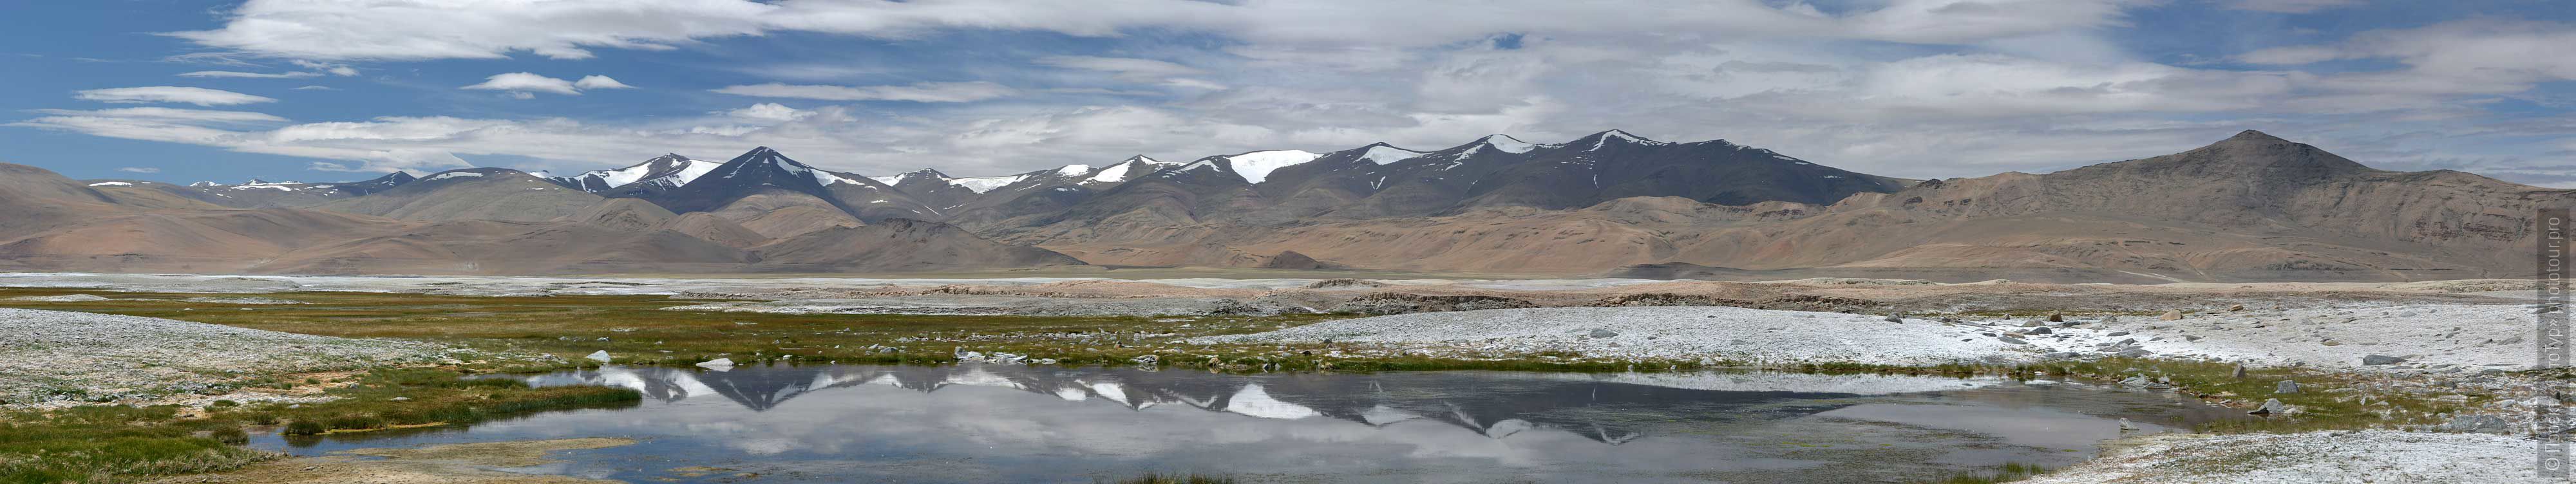 Lake Tso Kar, Ladakh. Tour Tibet Lakeside Advertising: Alpine lakes, geyser valley, Lamayuru, Colored Mountains, 01 - 10.09. 2022 year.